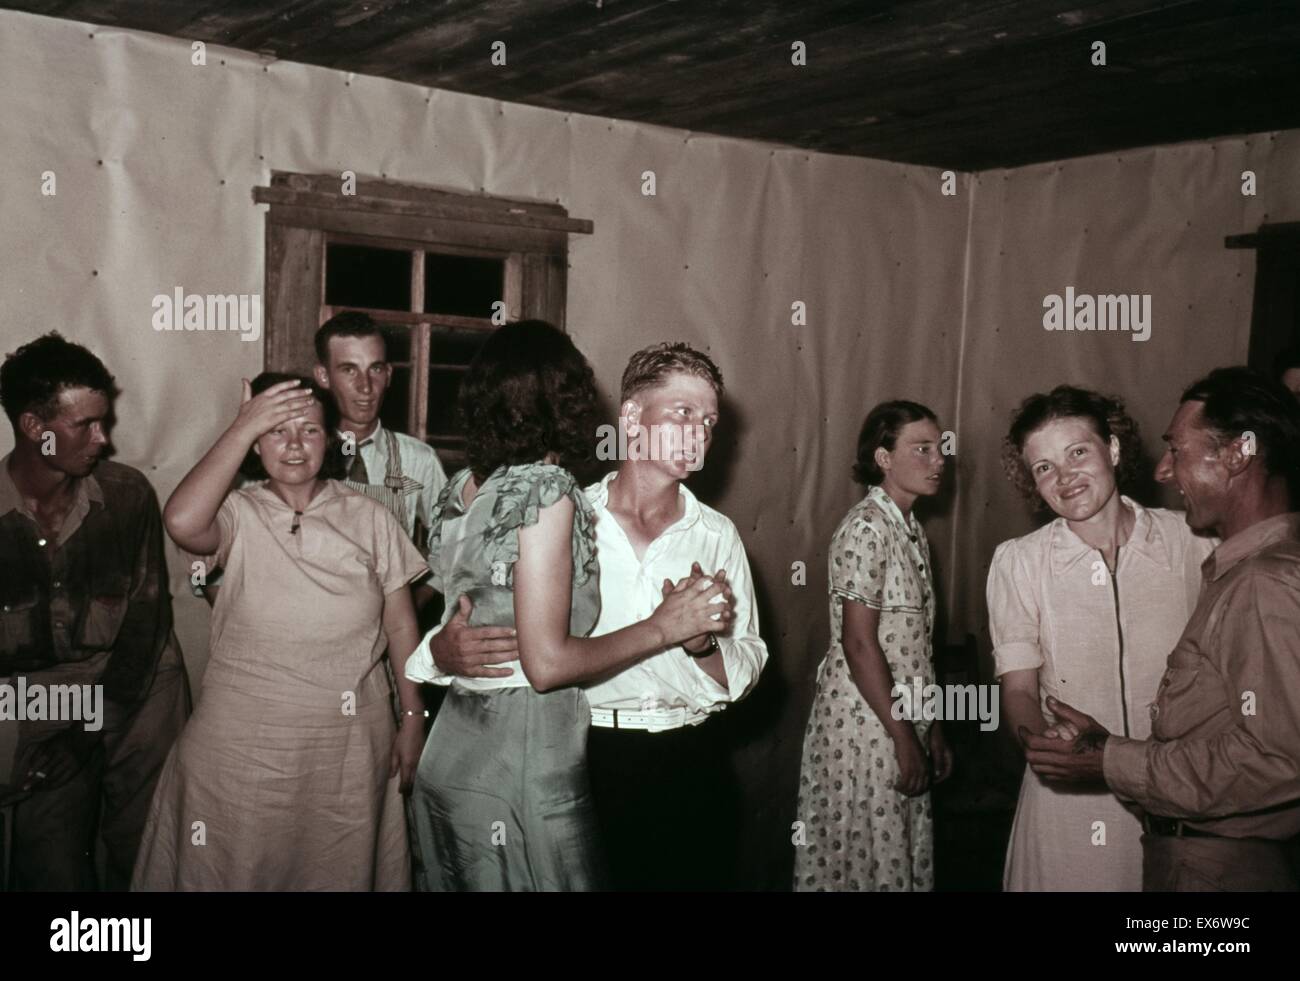 Scène à square dance en milieu rural accueil dans le comté de McIntosh, New York, USA. Photographe Russell Lee (1903-1986). La couleur. 1939 ou 1940. Banque D'Images